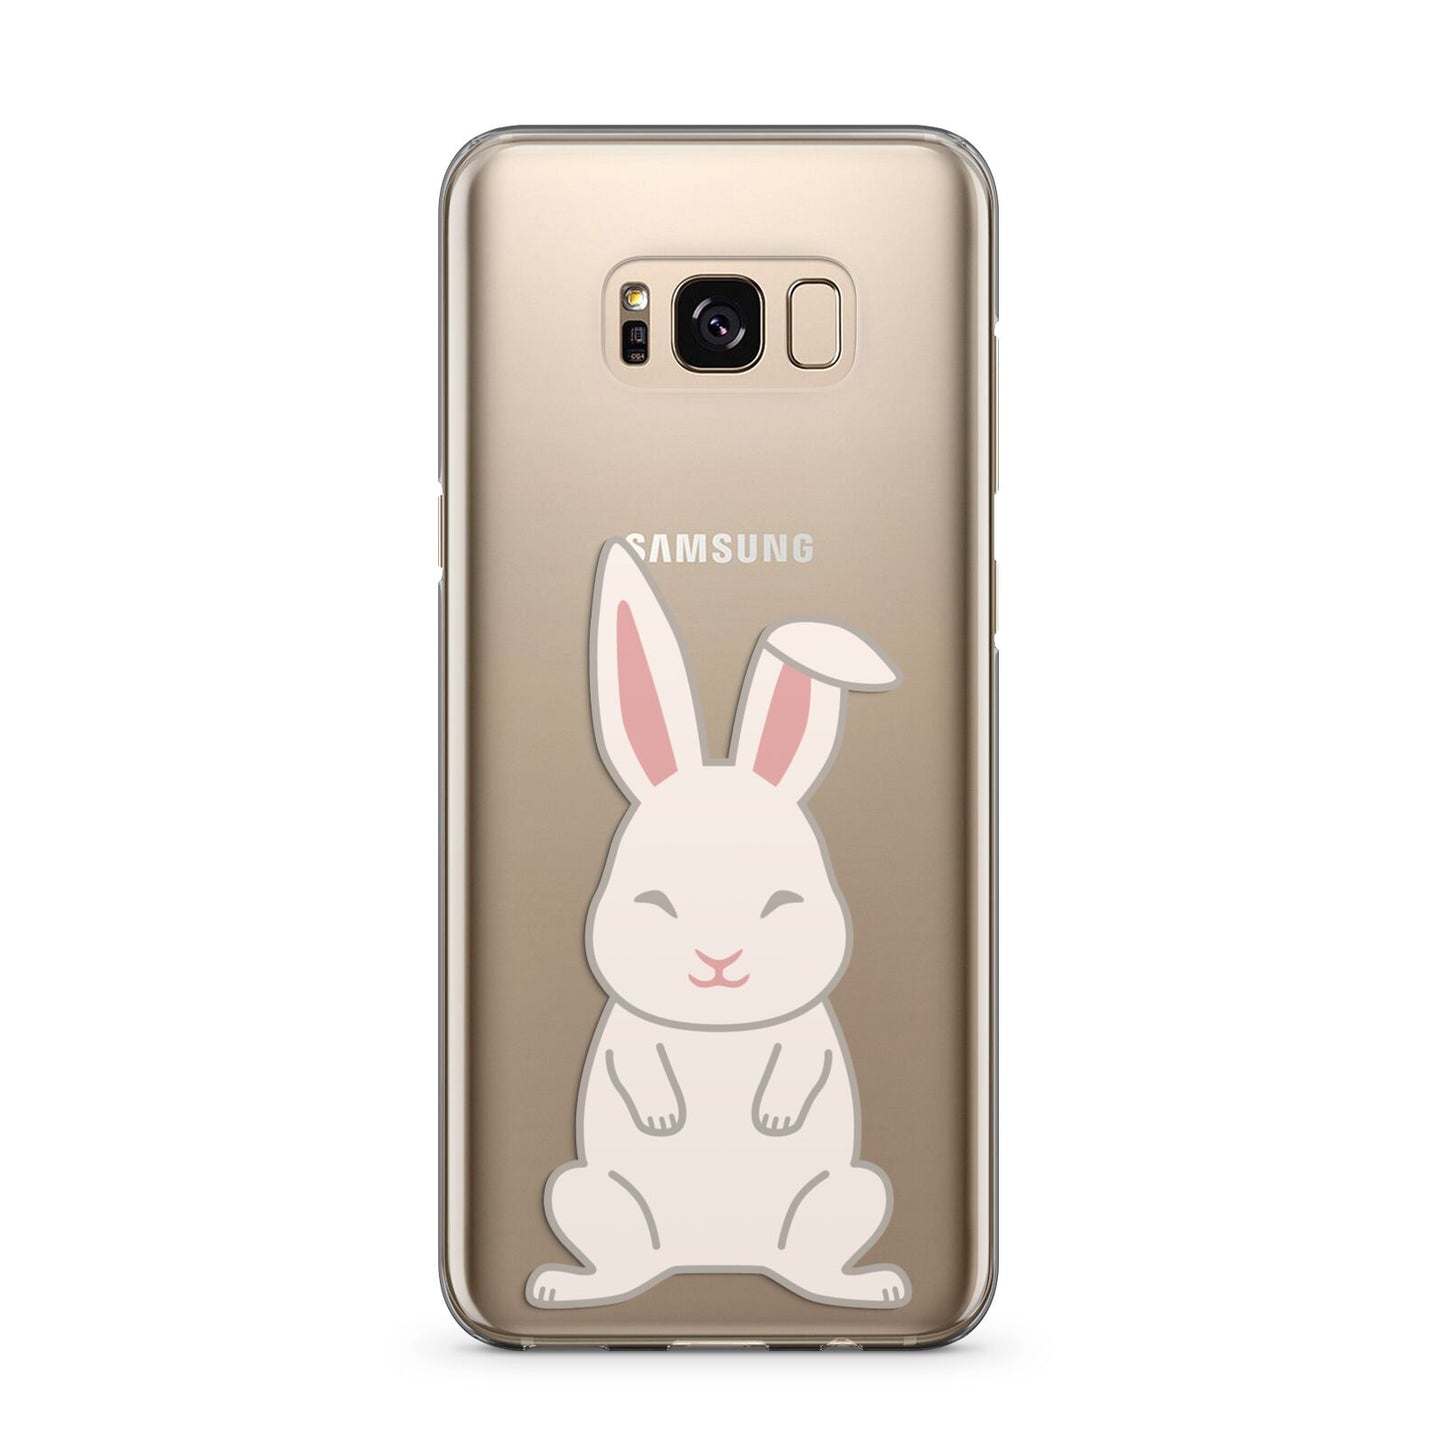 Bunny Samsung Galaxy S8 Plus Case